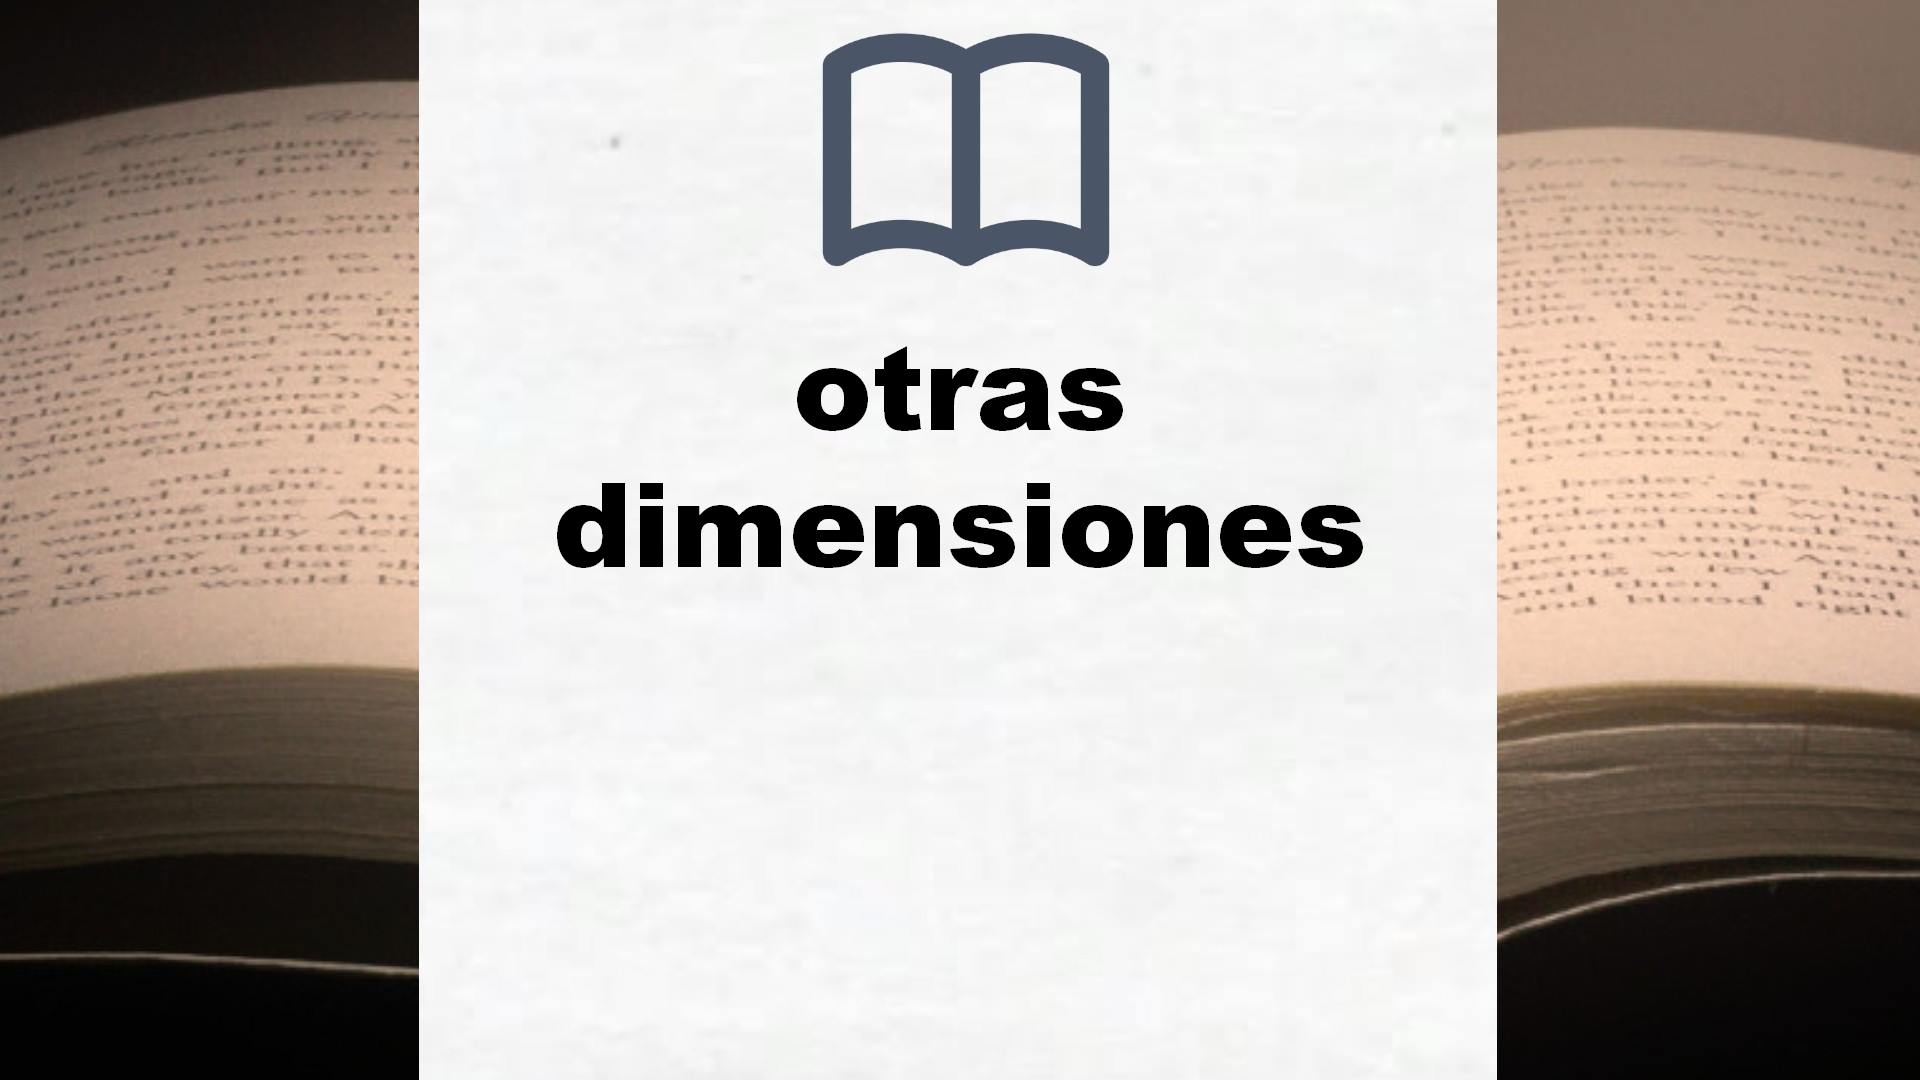 Libros sobre otras dimensiones